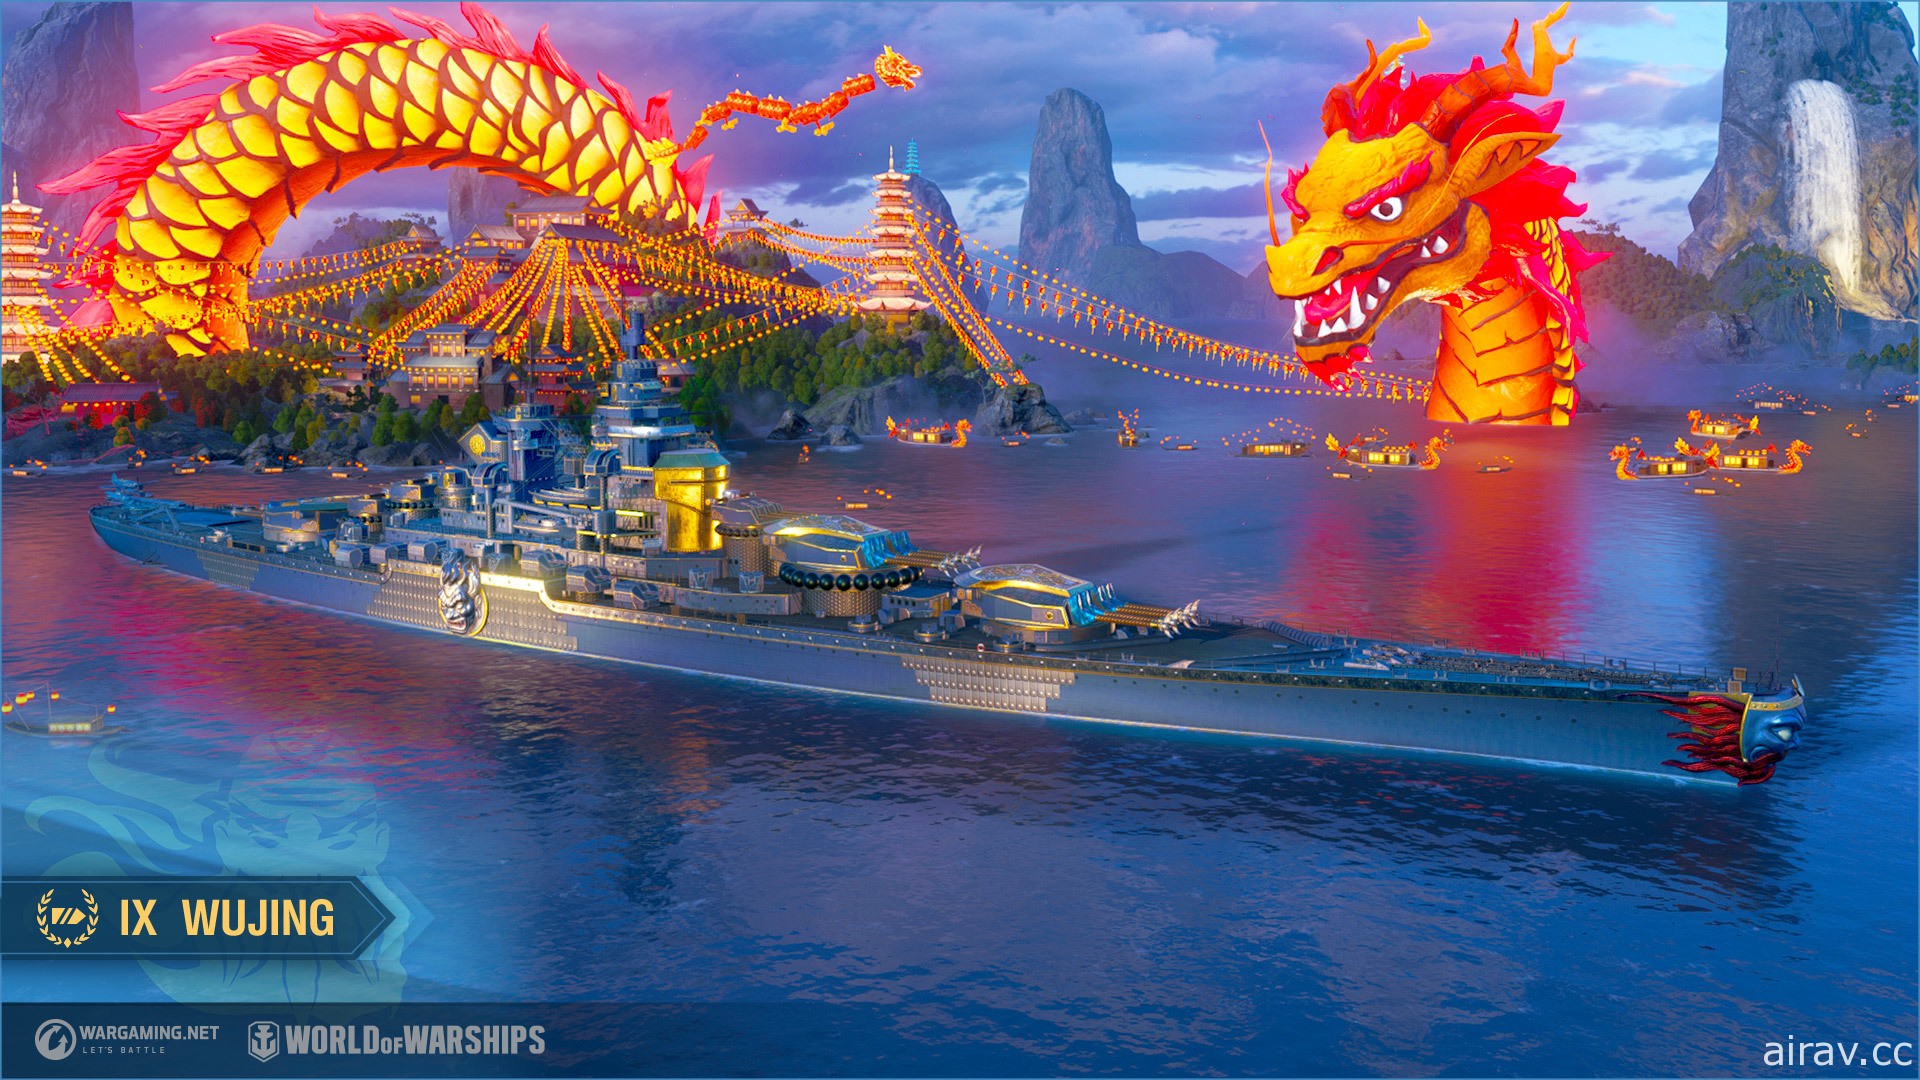 《戰艦世界》更新《西遊記》主題內容迎新春 沙悟淨、唐三藏指揮官登場